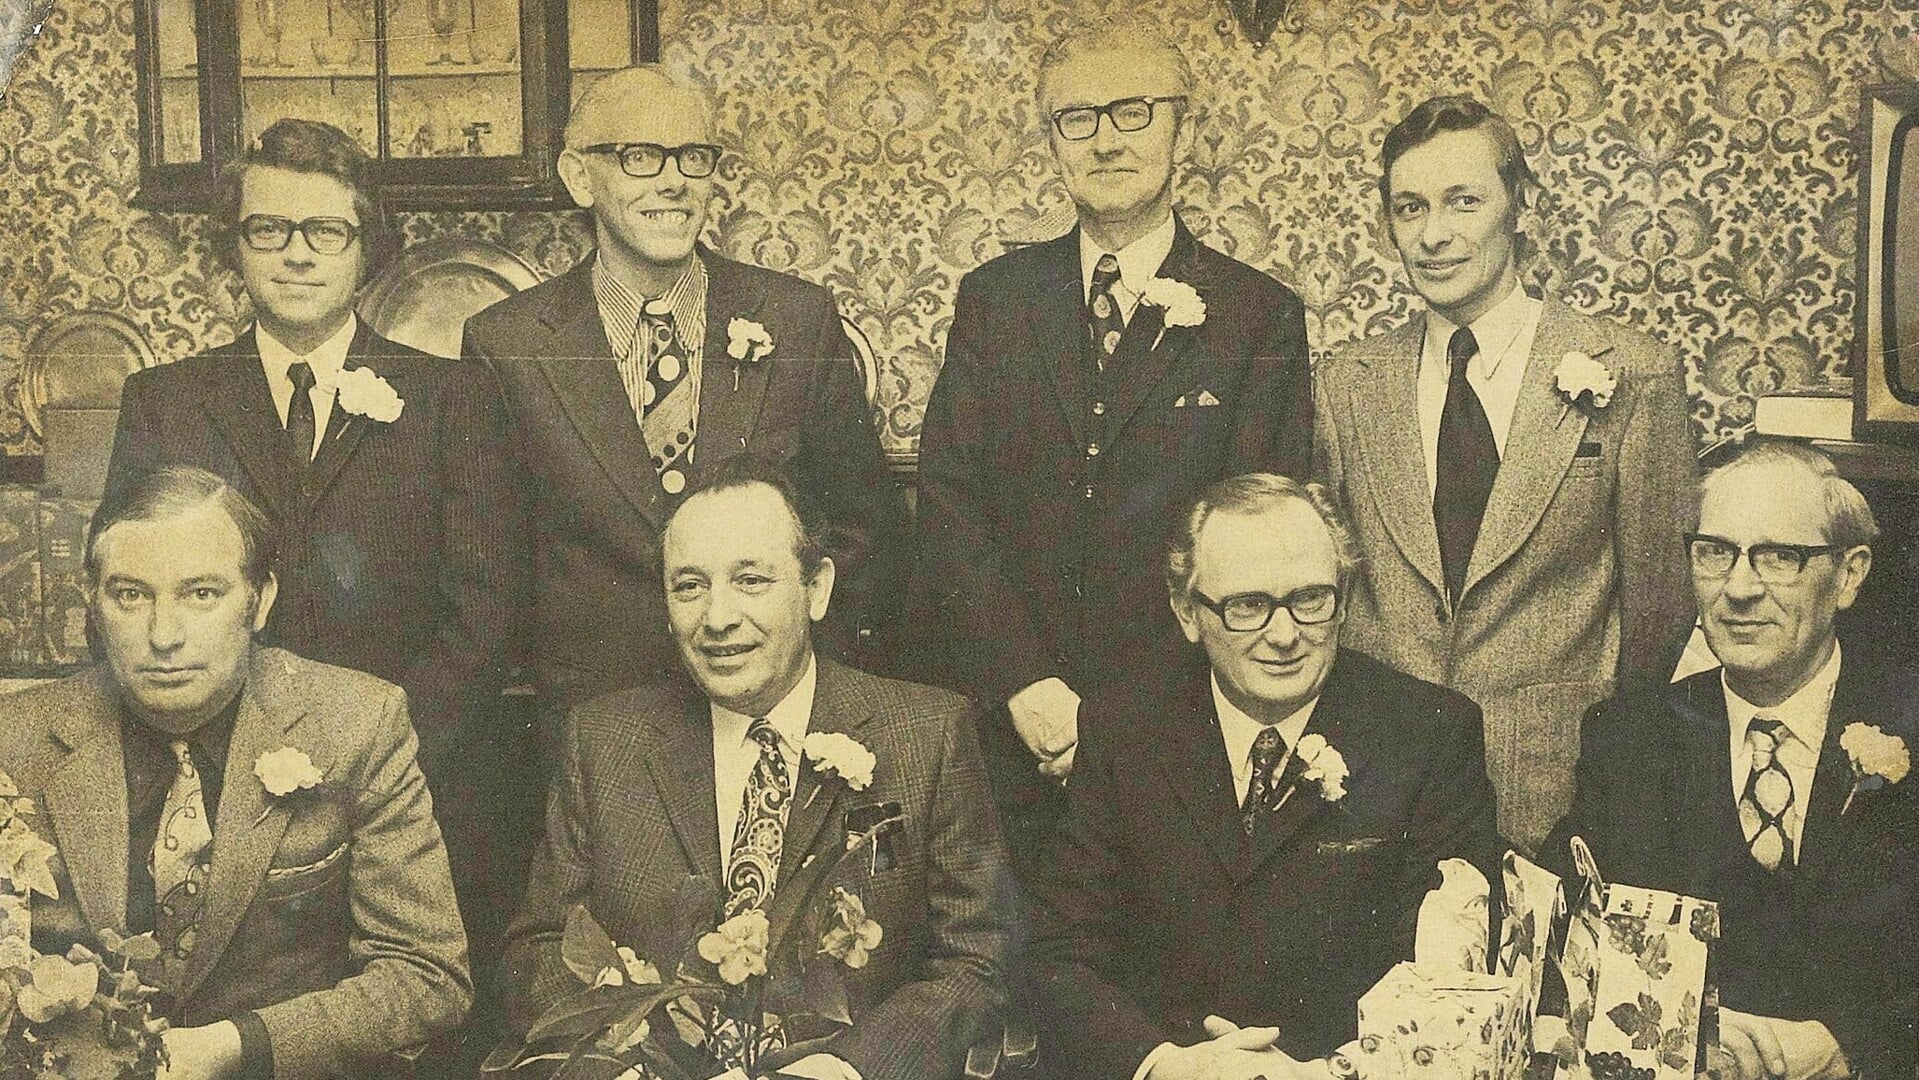 HABI bestuursleden in 1973. Van links naar rechts: Staand : Teun van Dam, Herman Zandvoort, B. Eshuis, Jan Muller. Zittend : G.J. Dangremond, Ies de Lange, J. Th. Gijsbers, G. Brunnekreef.